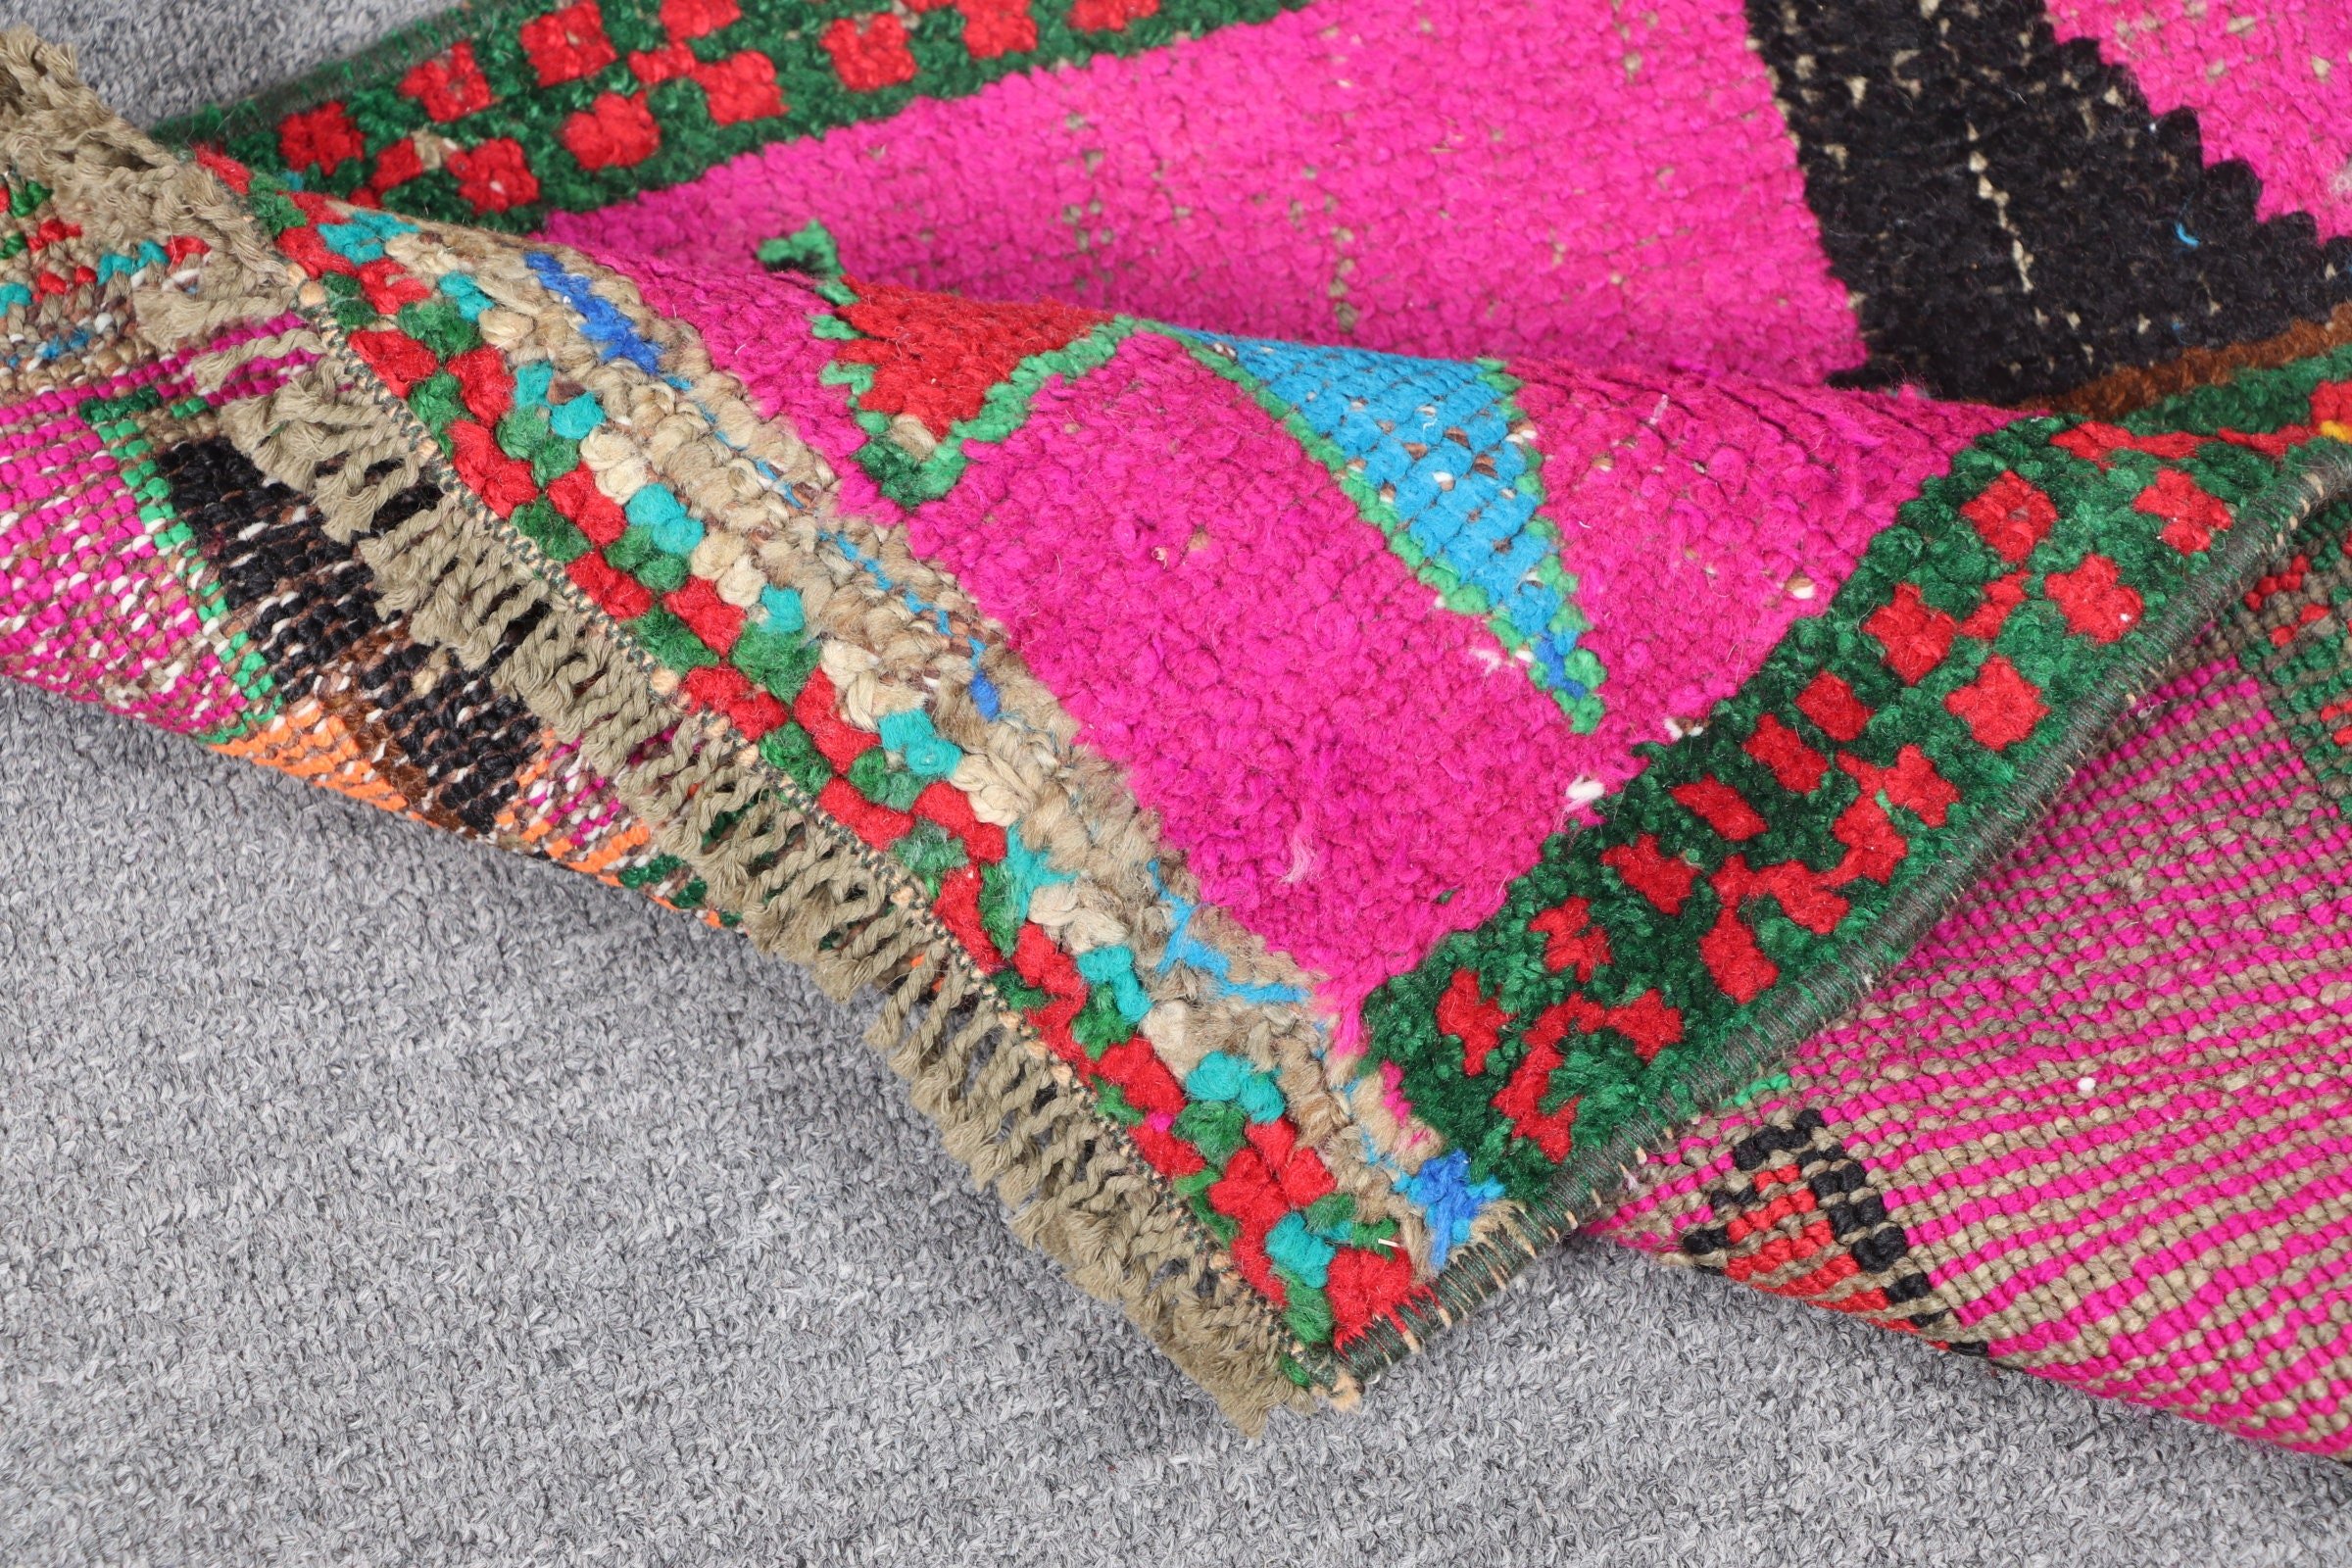 Turkish Rug, Moroccan Rug, Anatolian Rug, Abstract Rug, Vintage Rug, Pink Anatolian Rug, Wall Hanging Rug, Entry Rug, 1.4x2.7 ft Small Rug